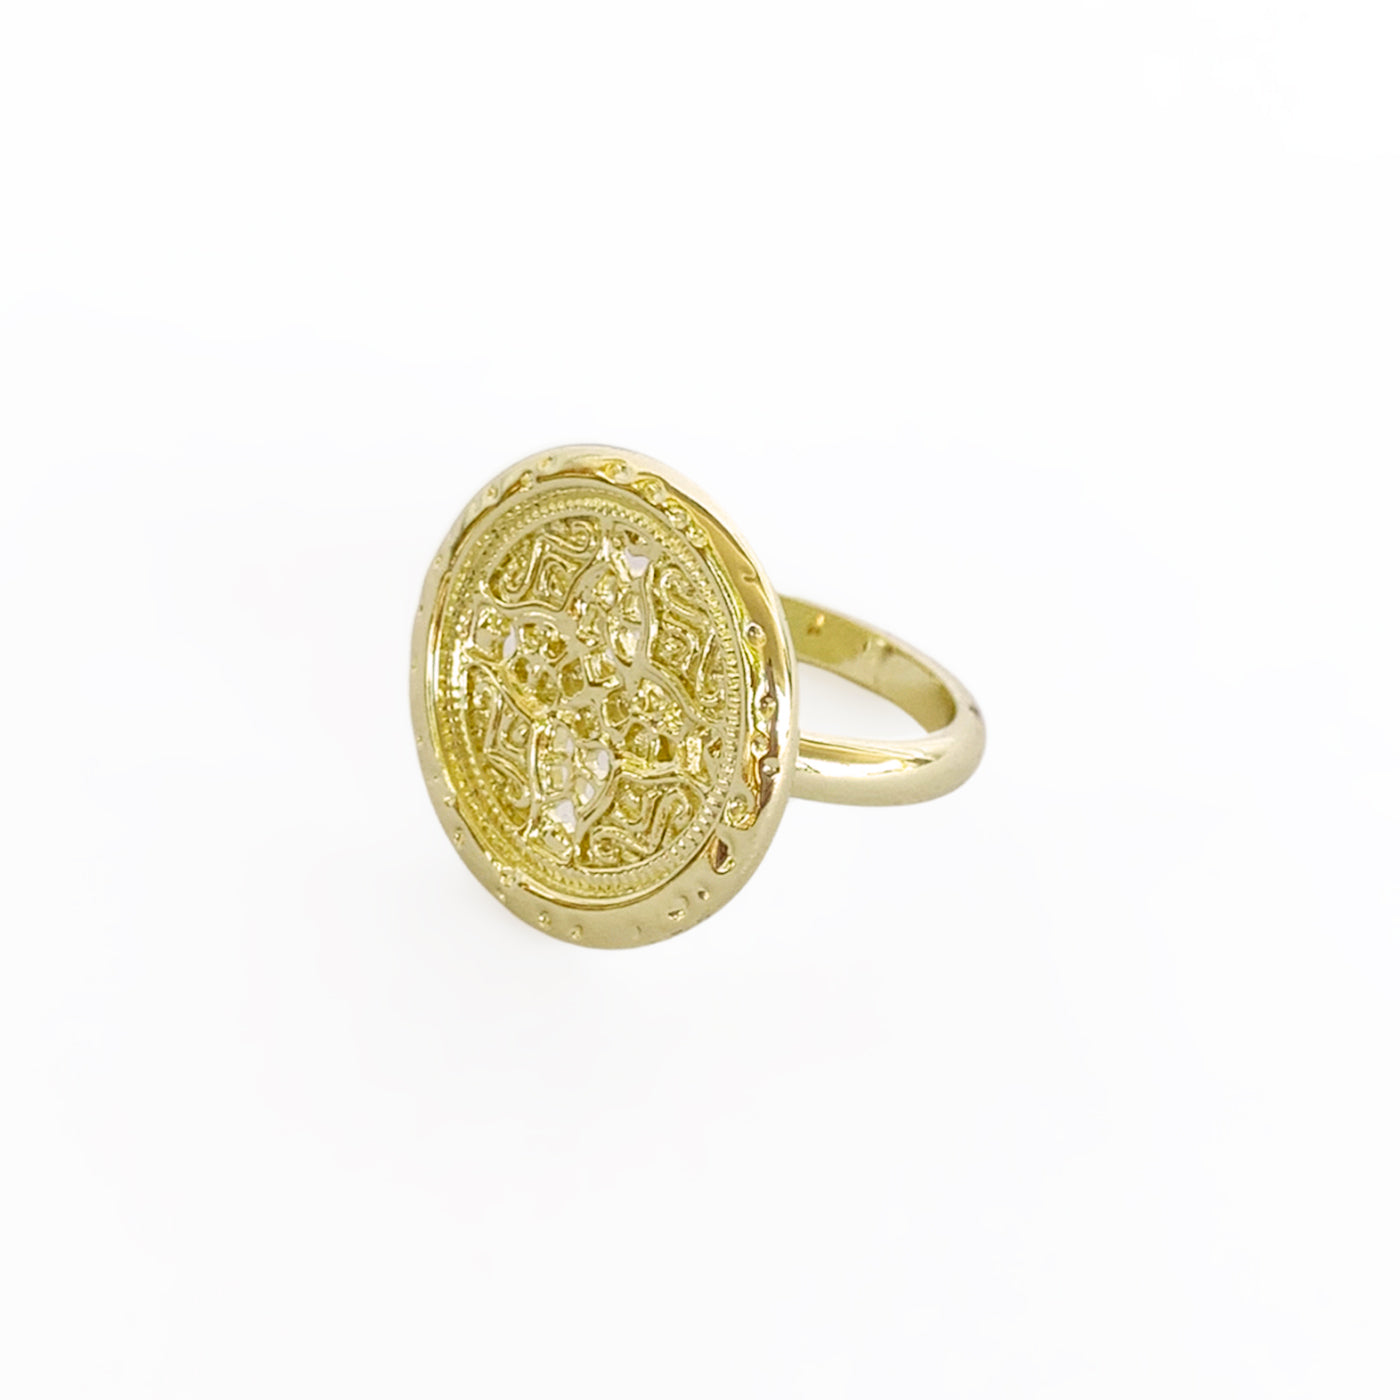 Rosette Medallion Ring